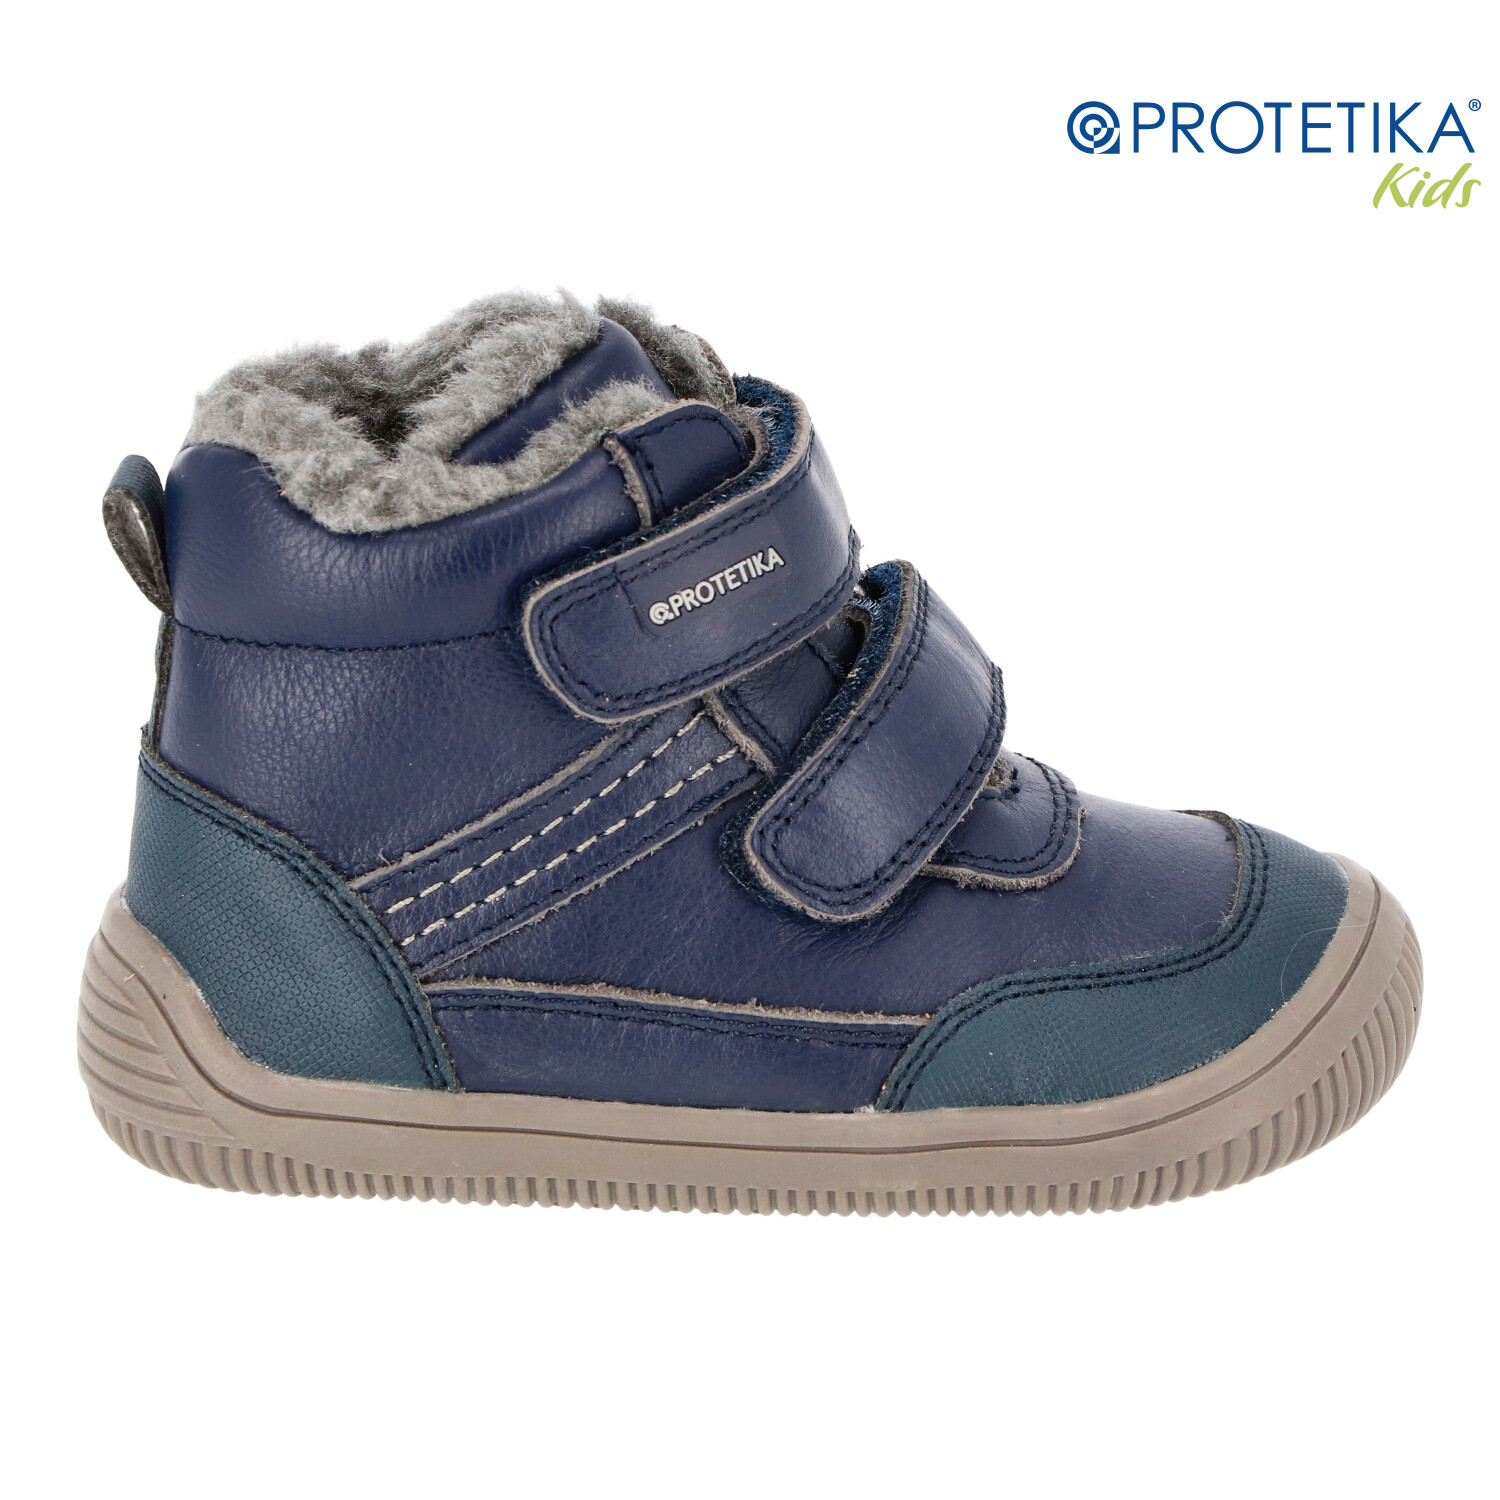 Protetika - zimné barefootové topánky TYREL marine - zateplené kožušinkou